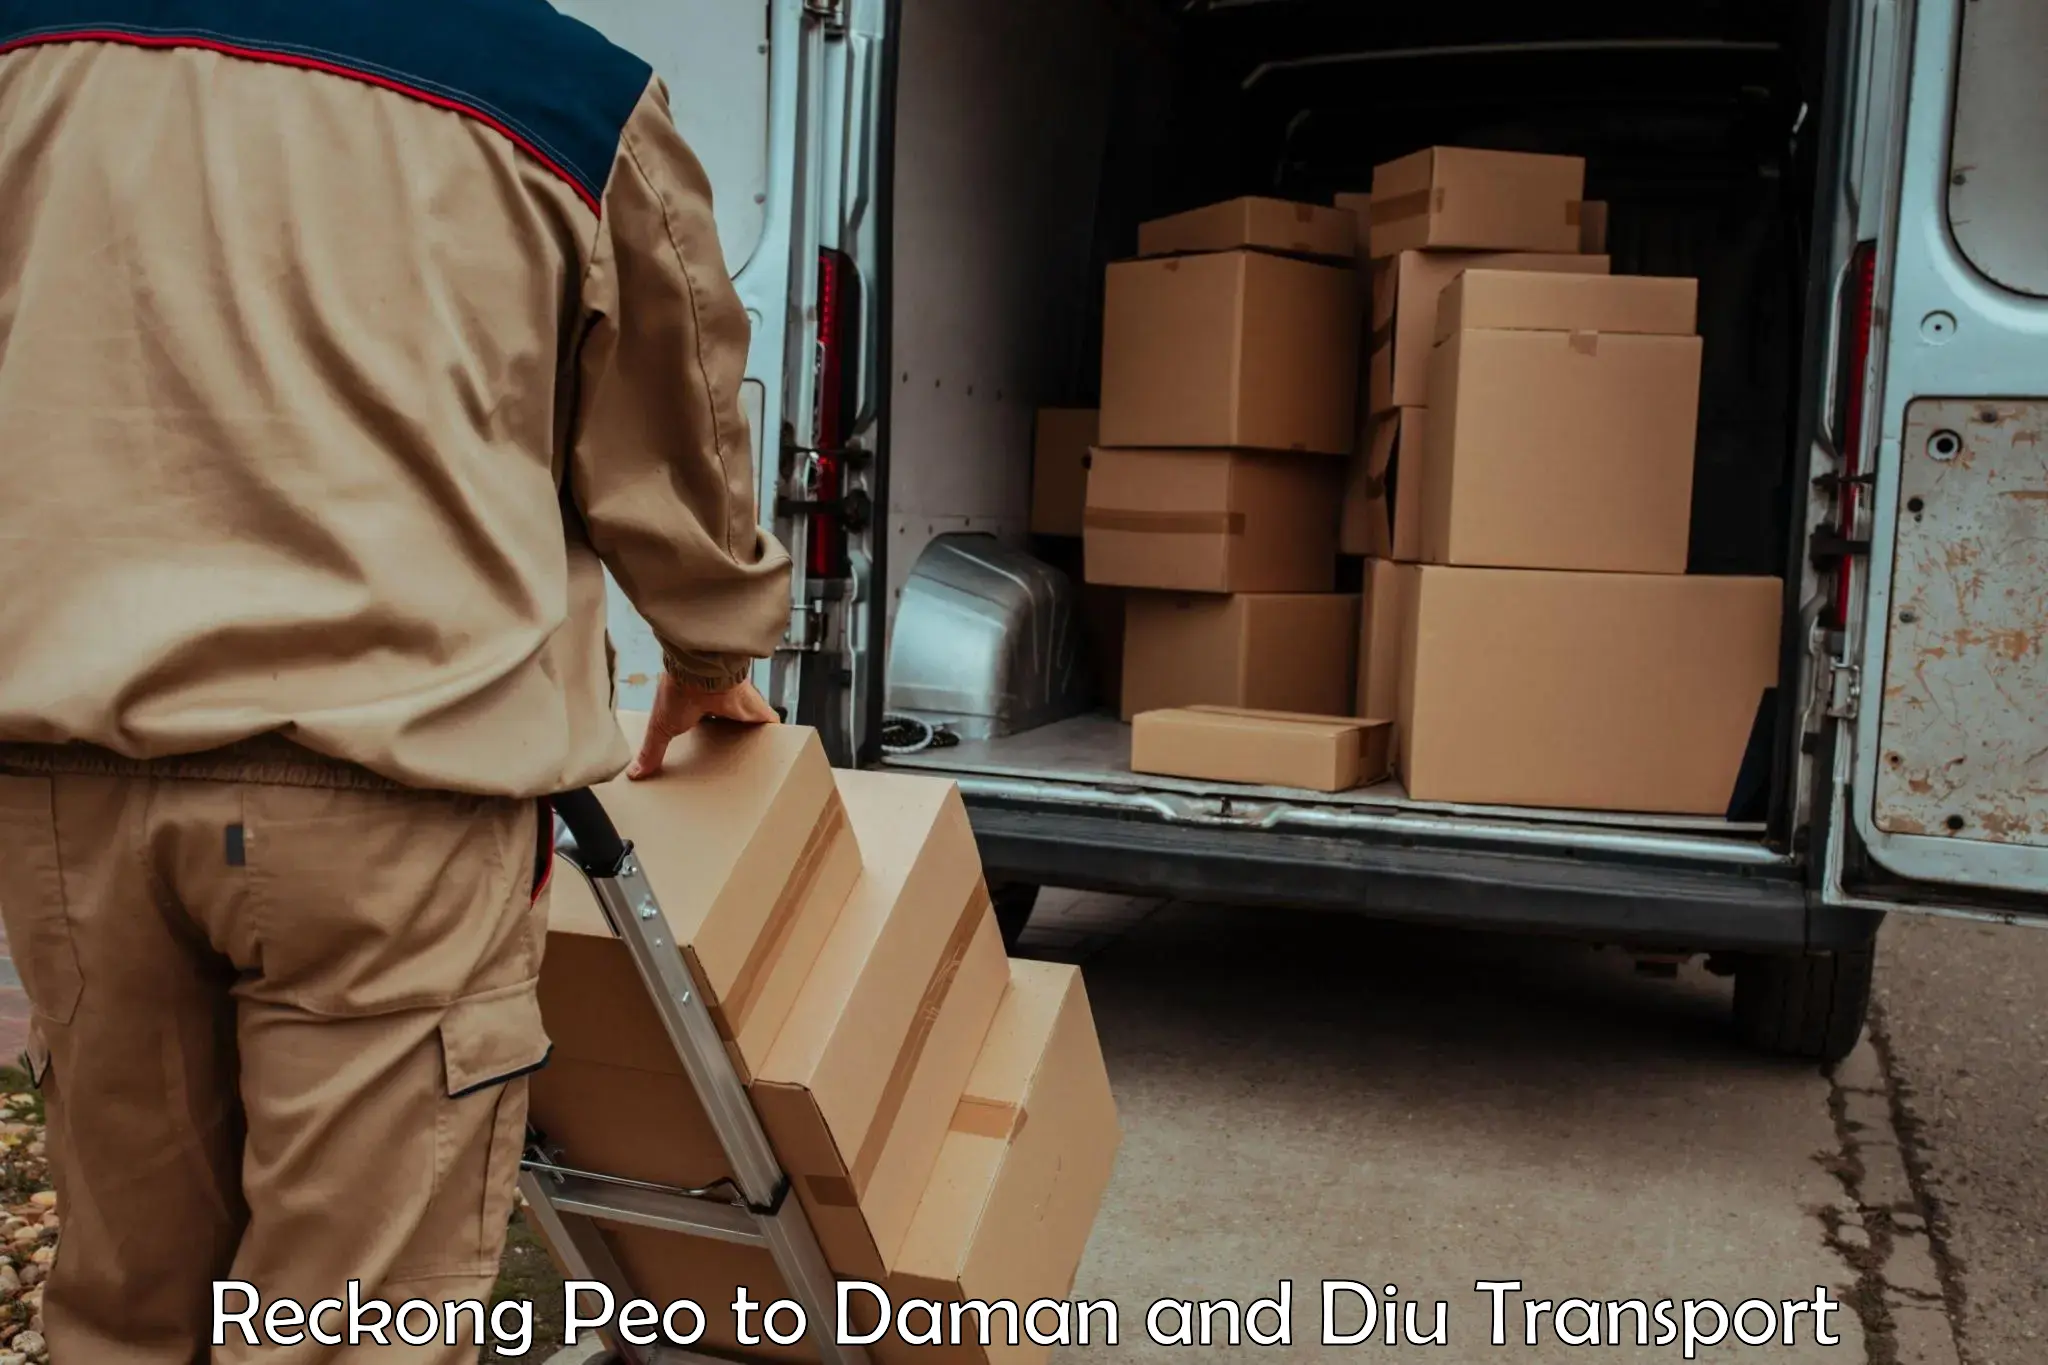 Nearest transport service Reckong Peo to Daman and Diu